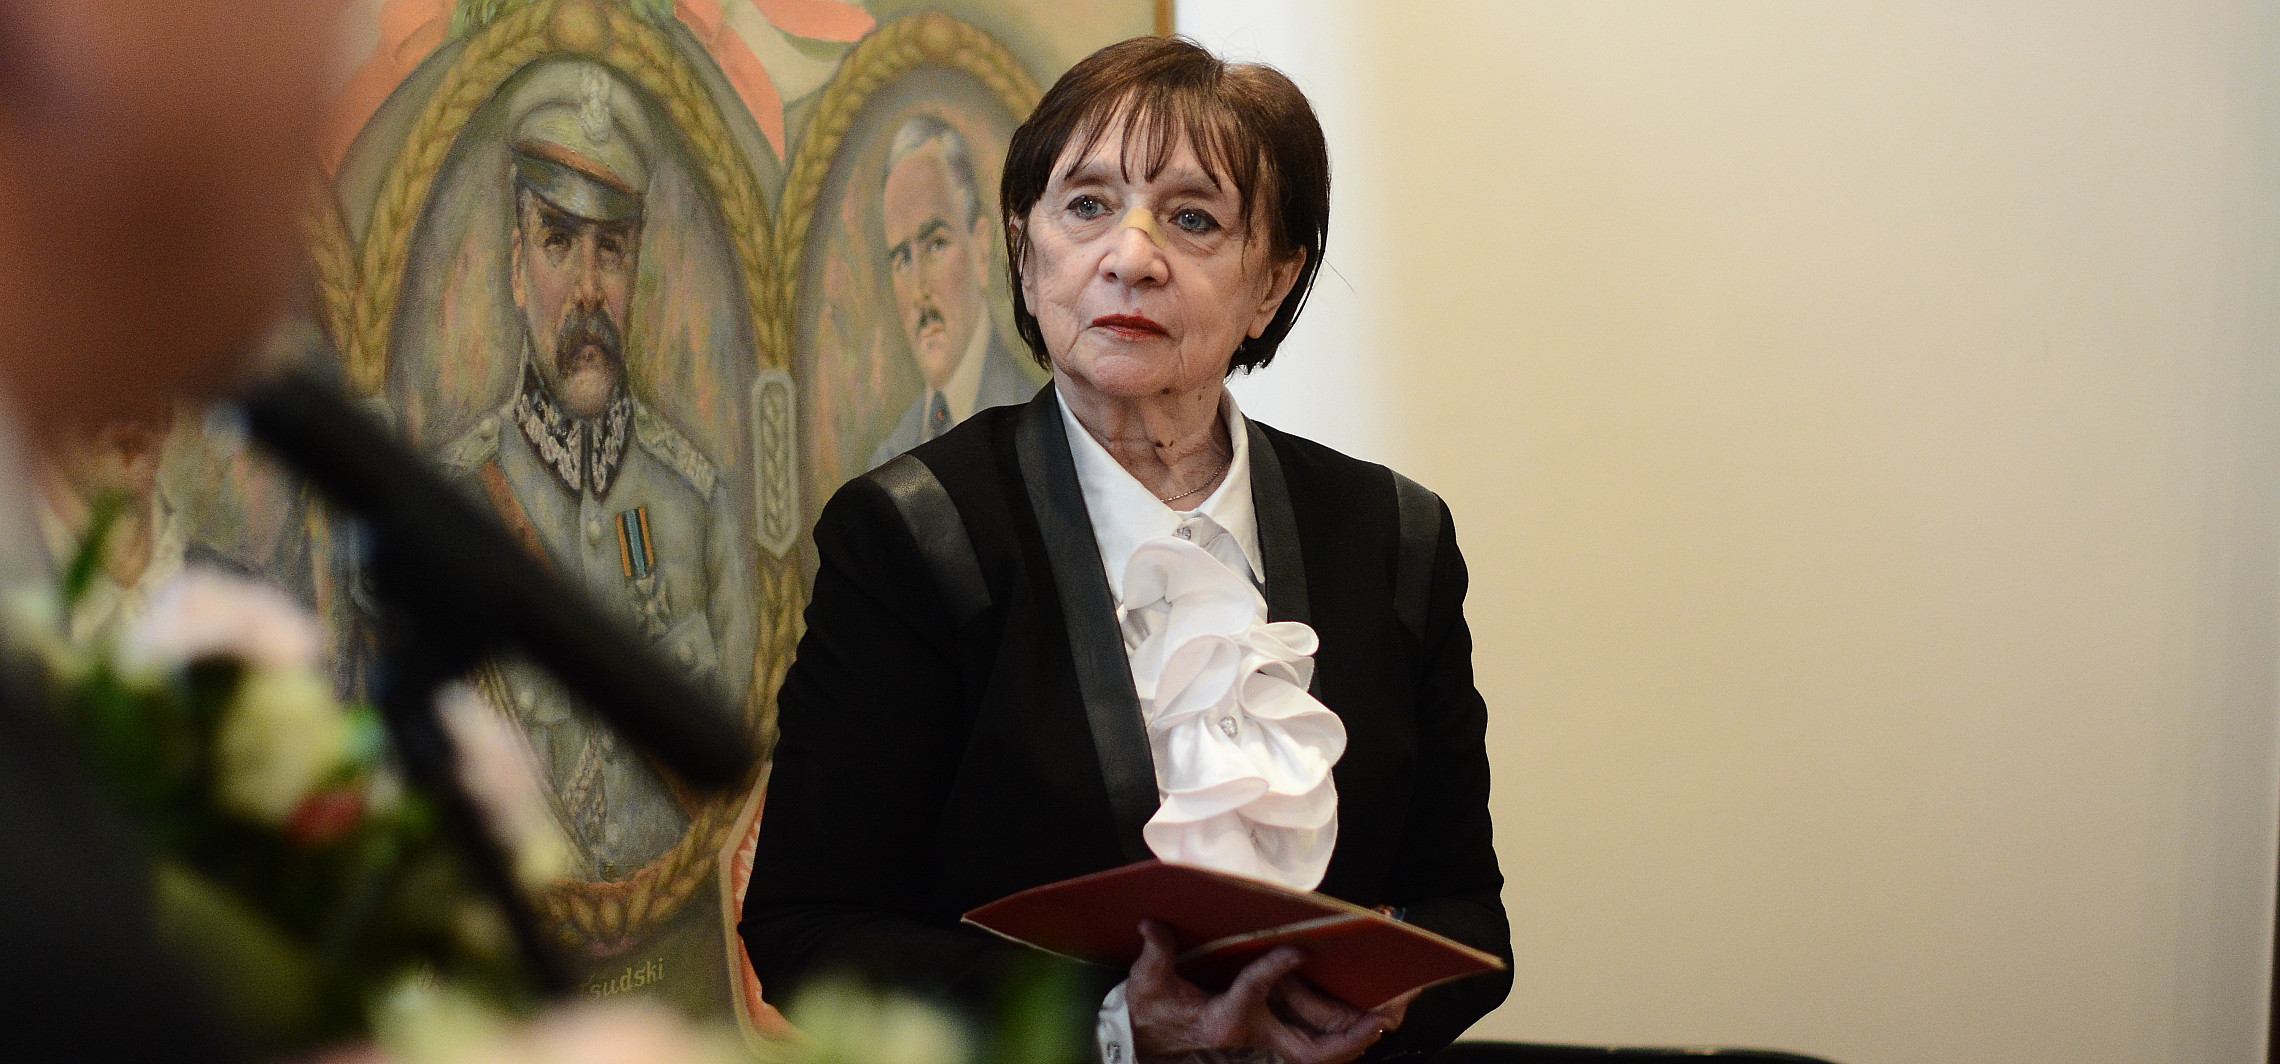 Inowrocław - Janina Sikorska odchodzi. Po 42 latach